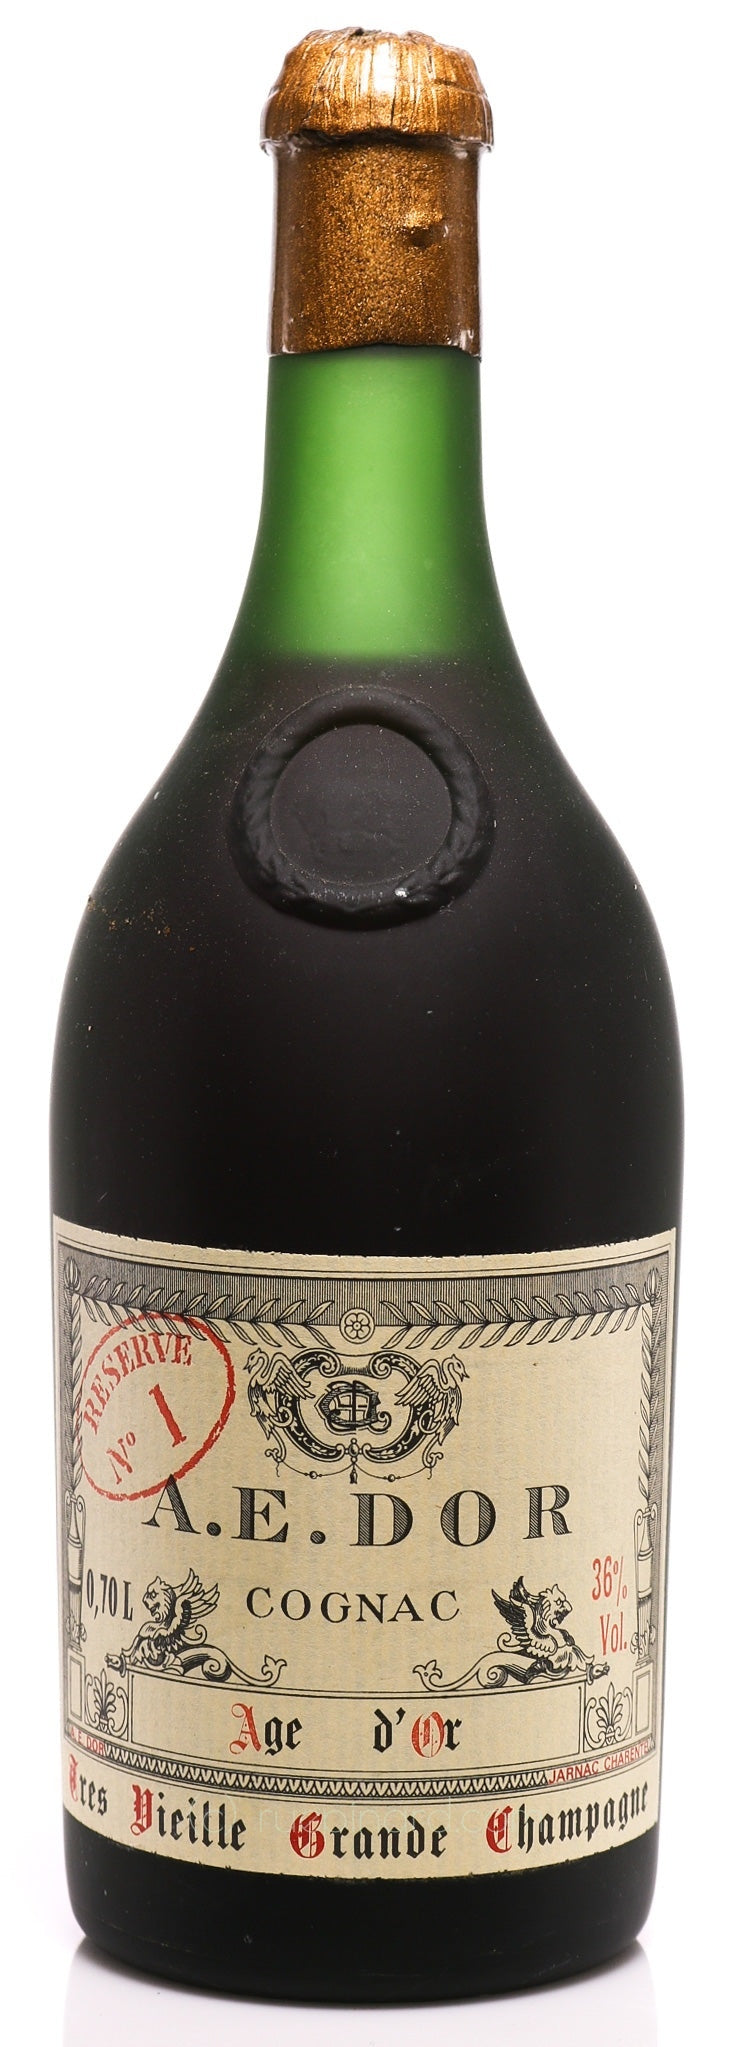 AE Dor No.1 Cognac 1893 Vintage Age d'Or, Grande Champagne - Rue Pinard